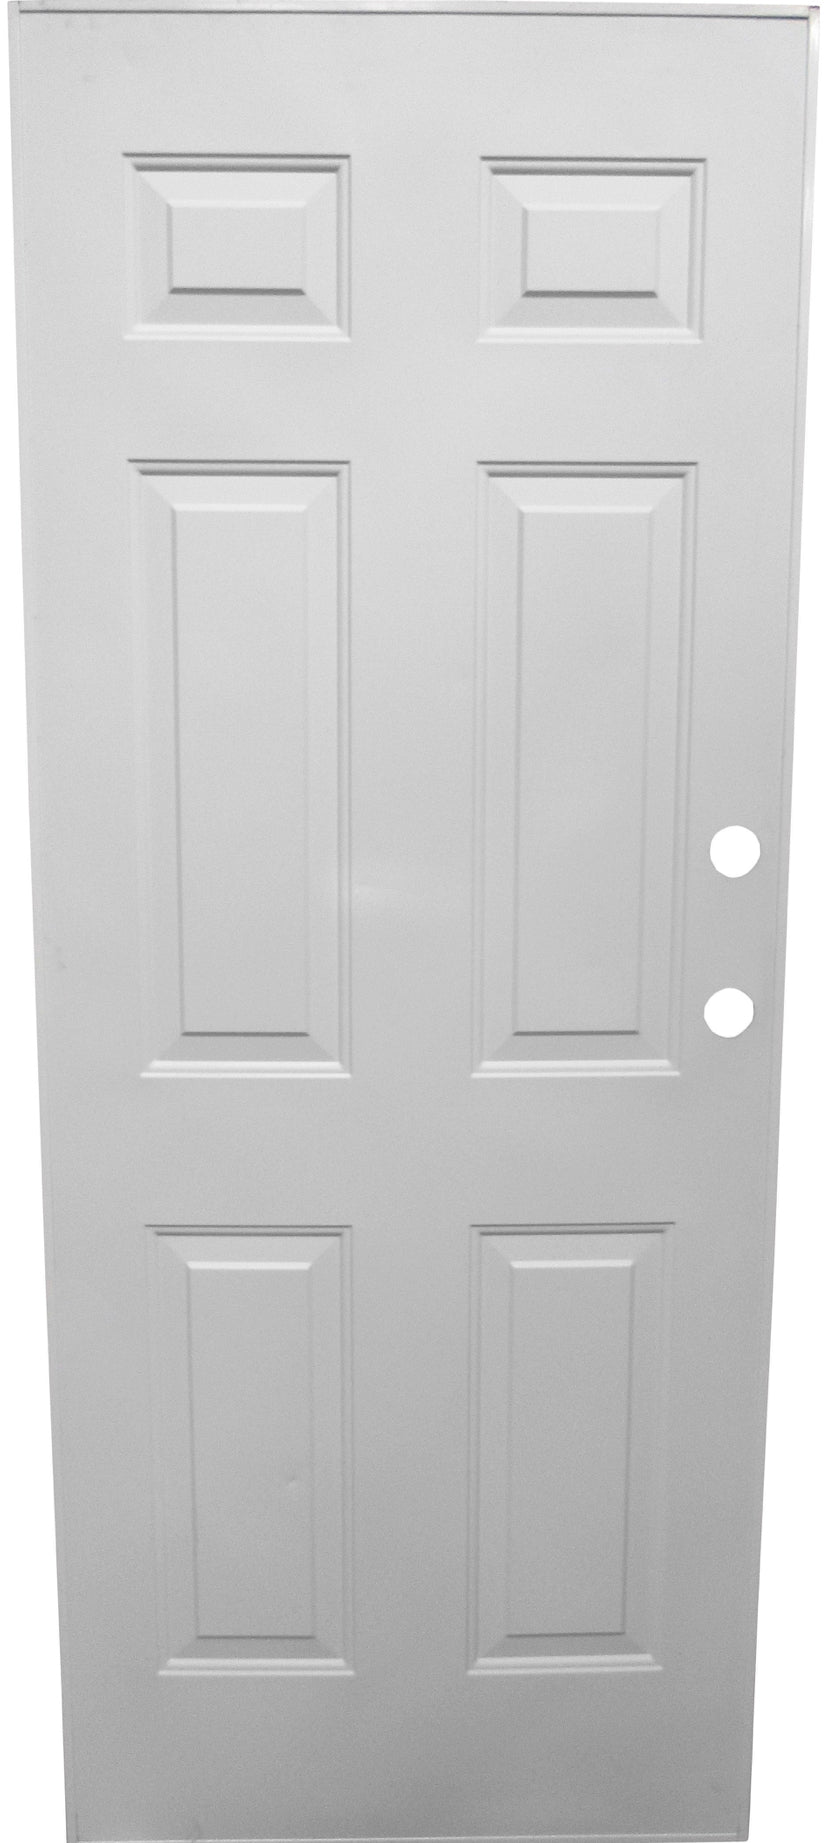 STEEL DOOR - 6 PANEL DOOR